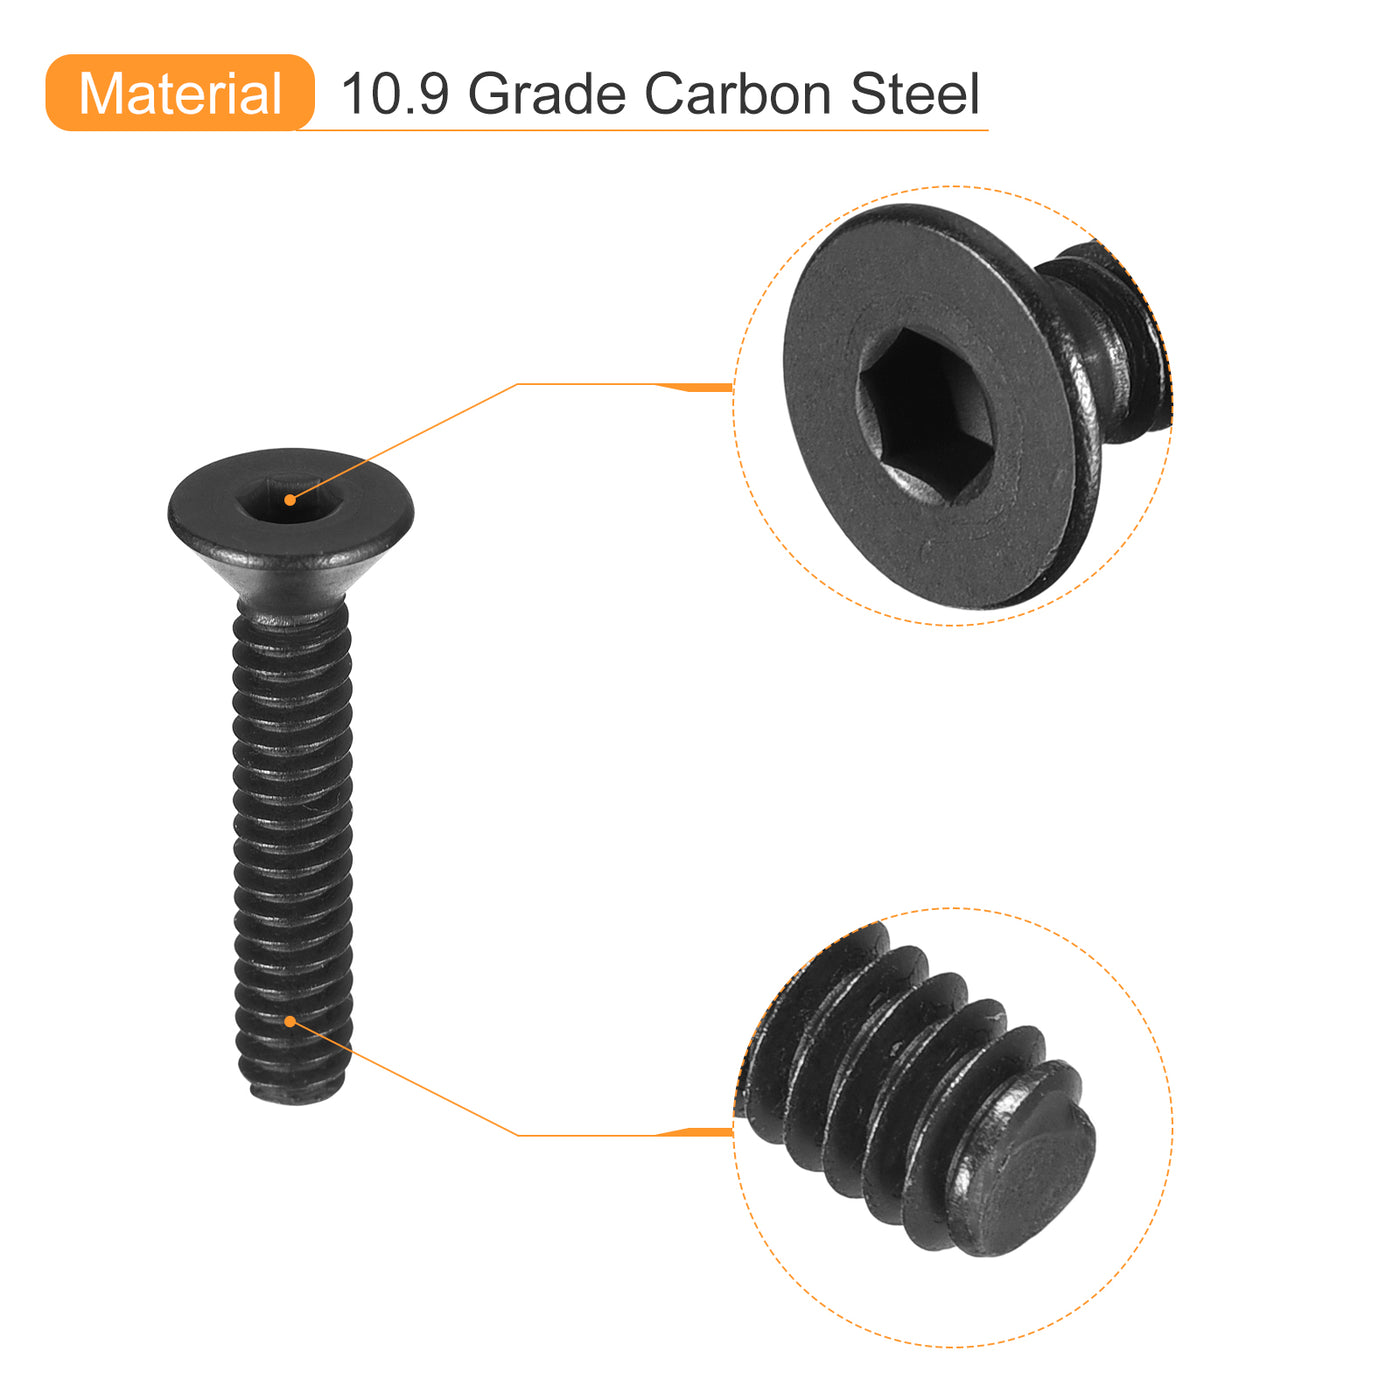 uxcell Uxcell #5-40x5/8" Flat Head Socket Cap Screws, 10.9 Grade Carbon, Black, 10pcs